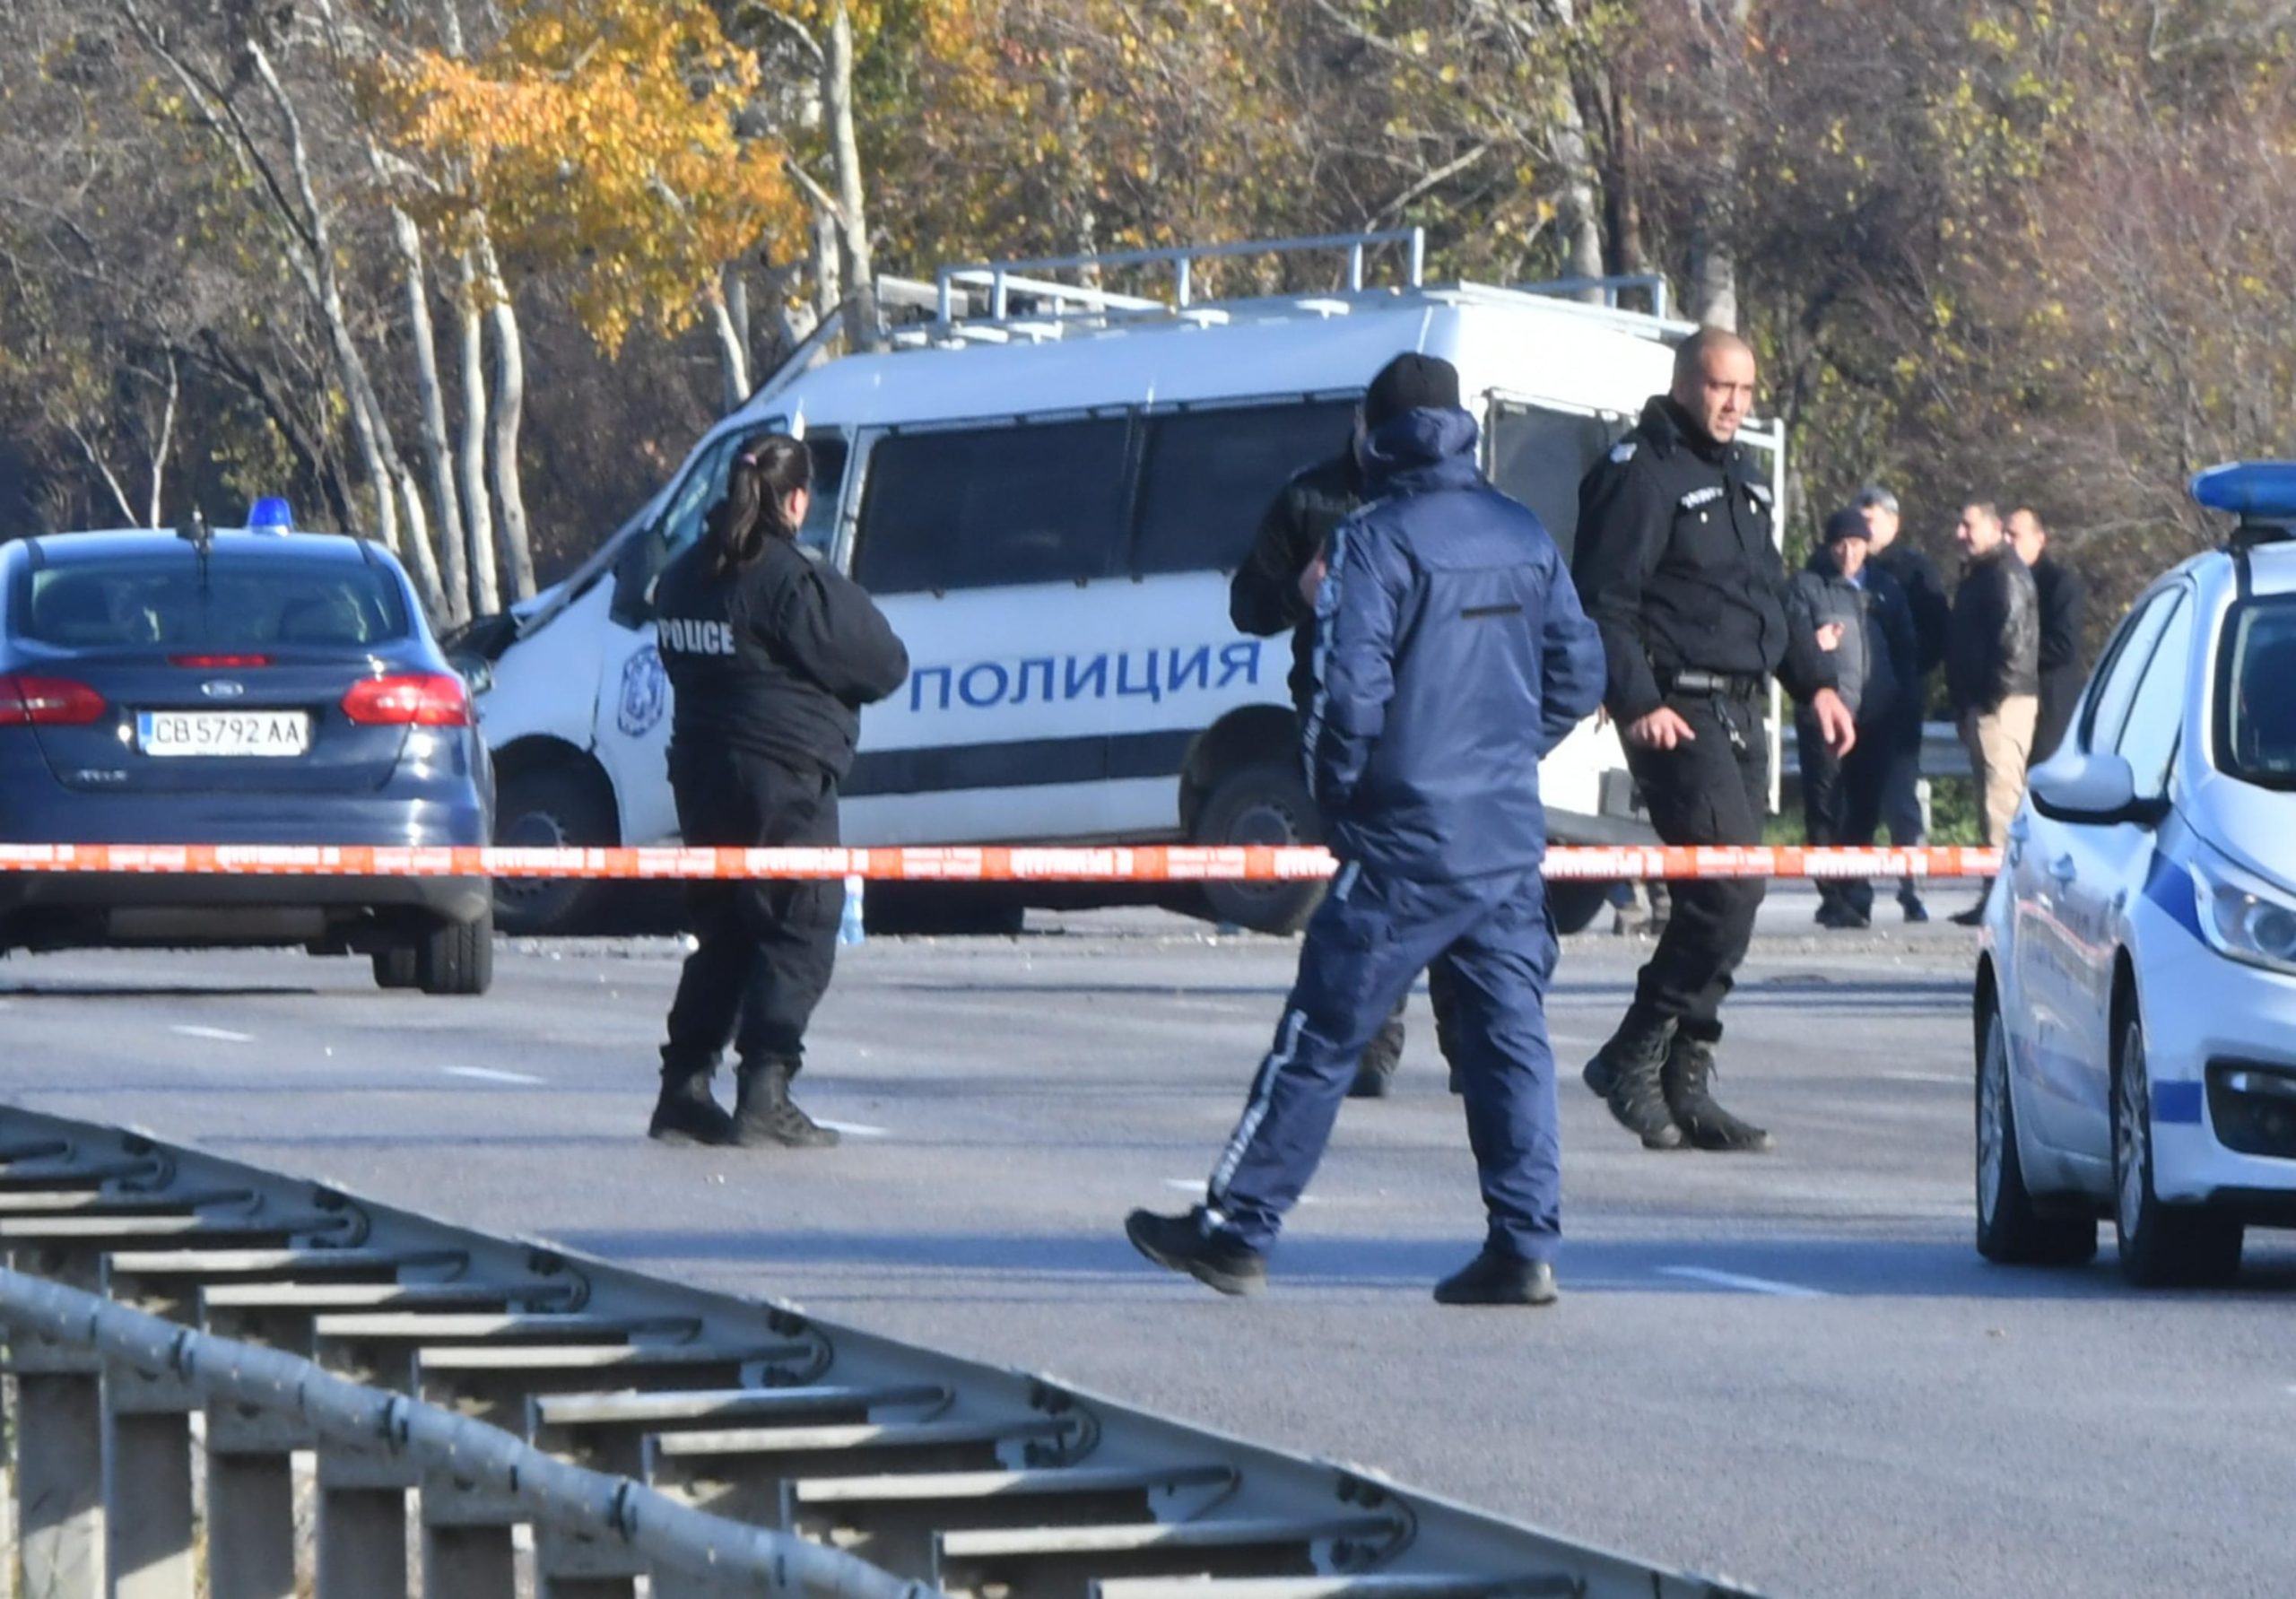 Полицията залови поредните нелегални мигранти, този път в Карлово. Екшънът